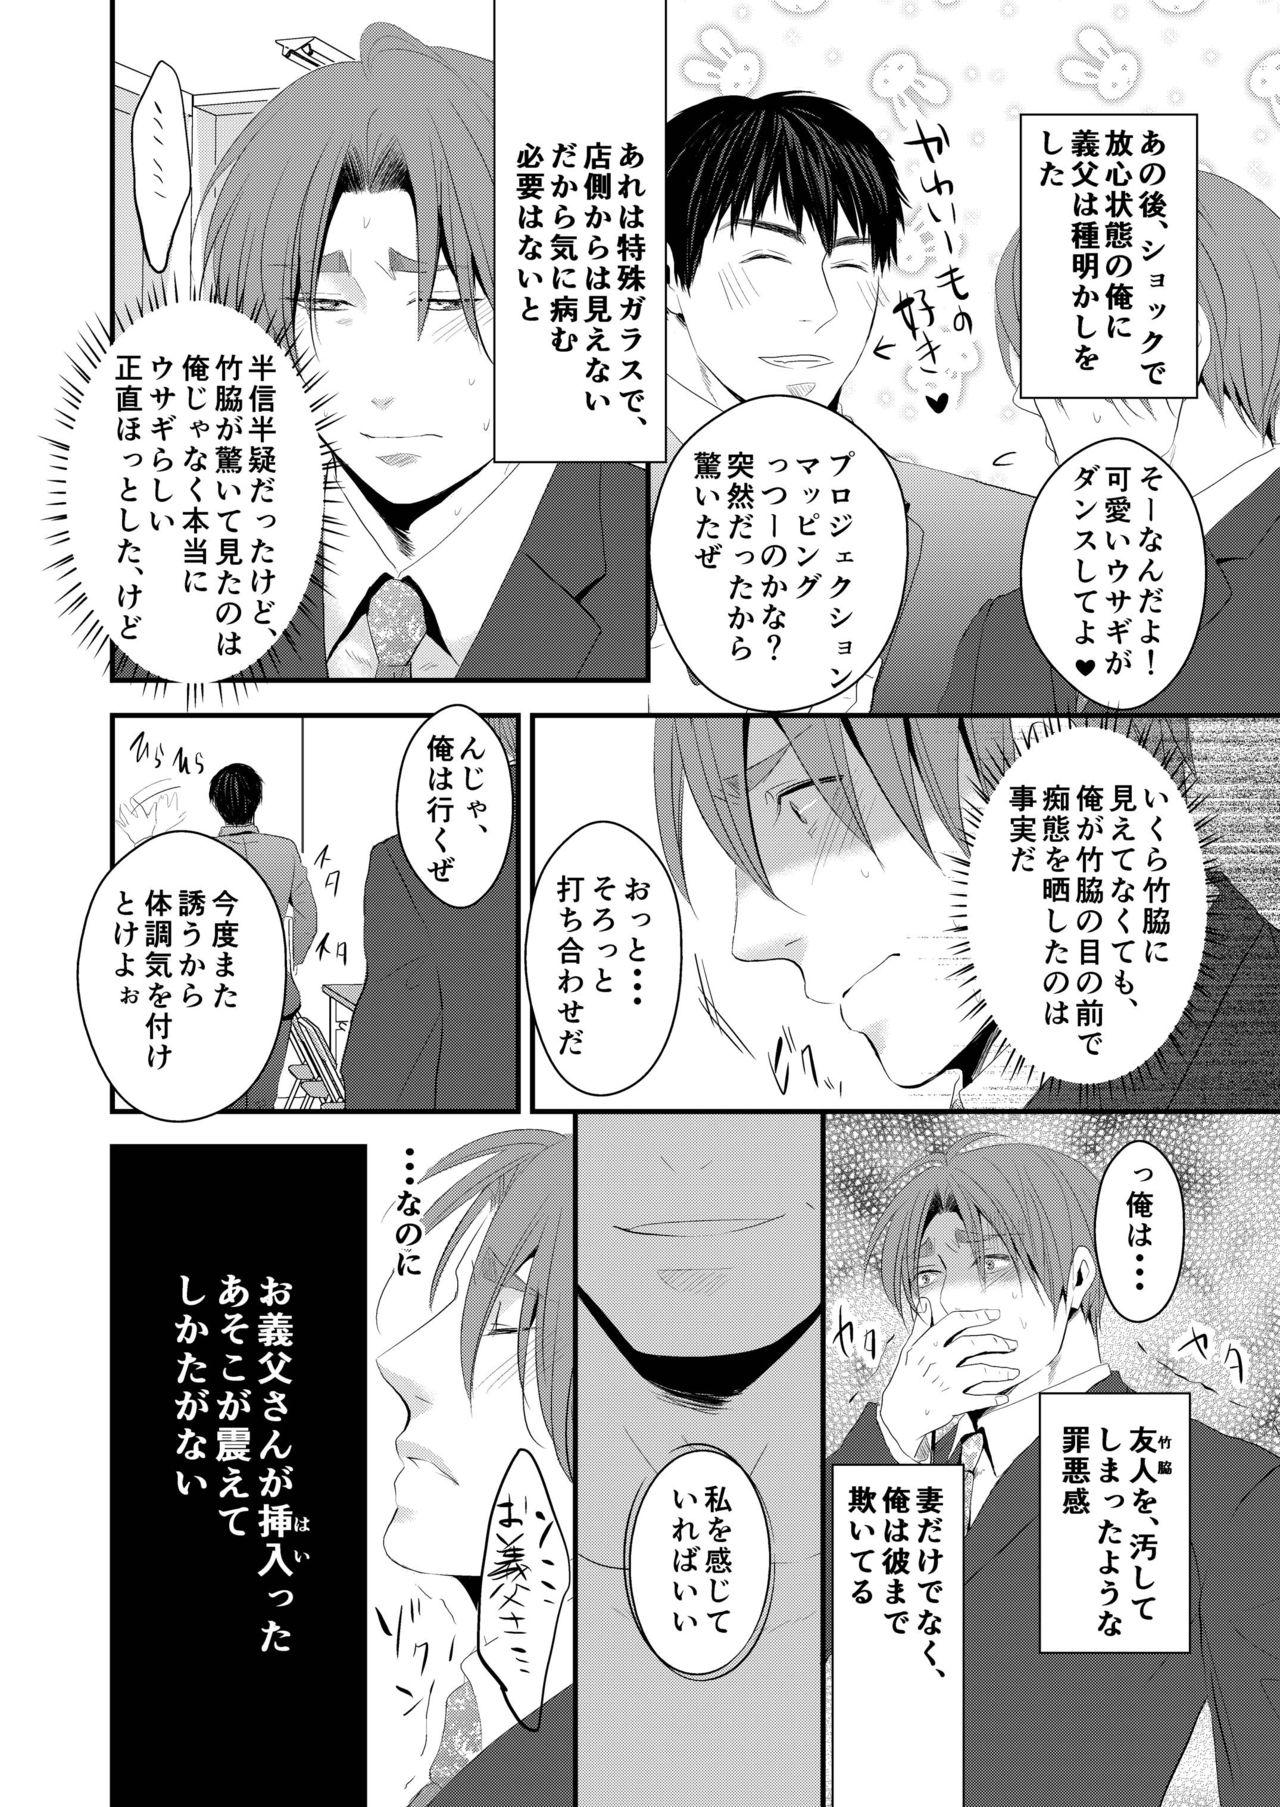 Online Kono ai wa Yamai ni Nite iru 3 Transex - Page 27